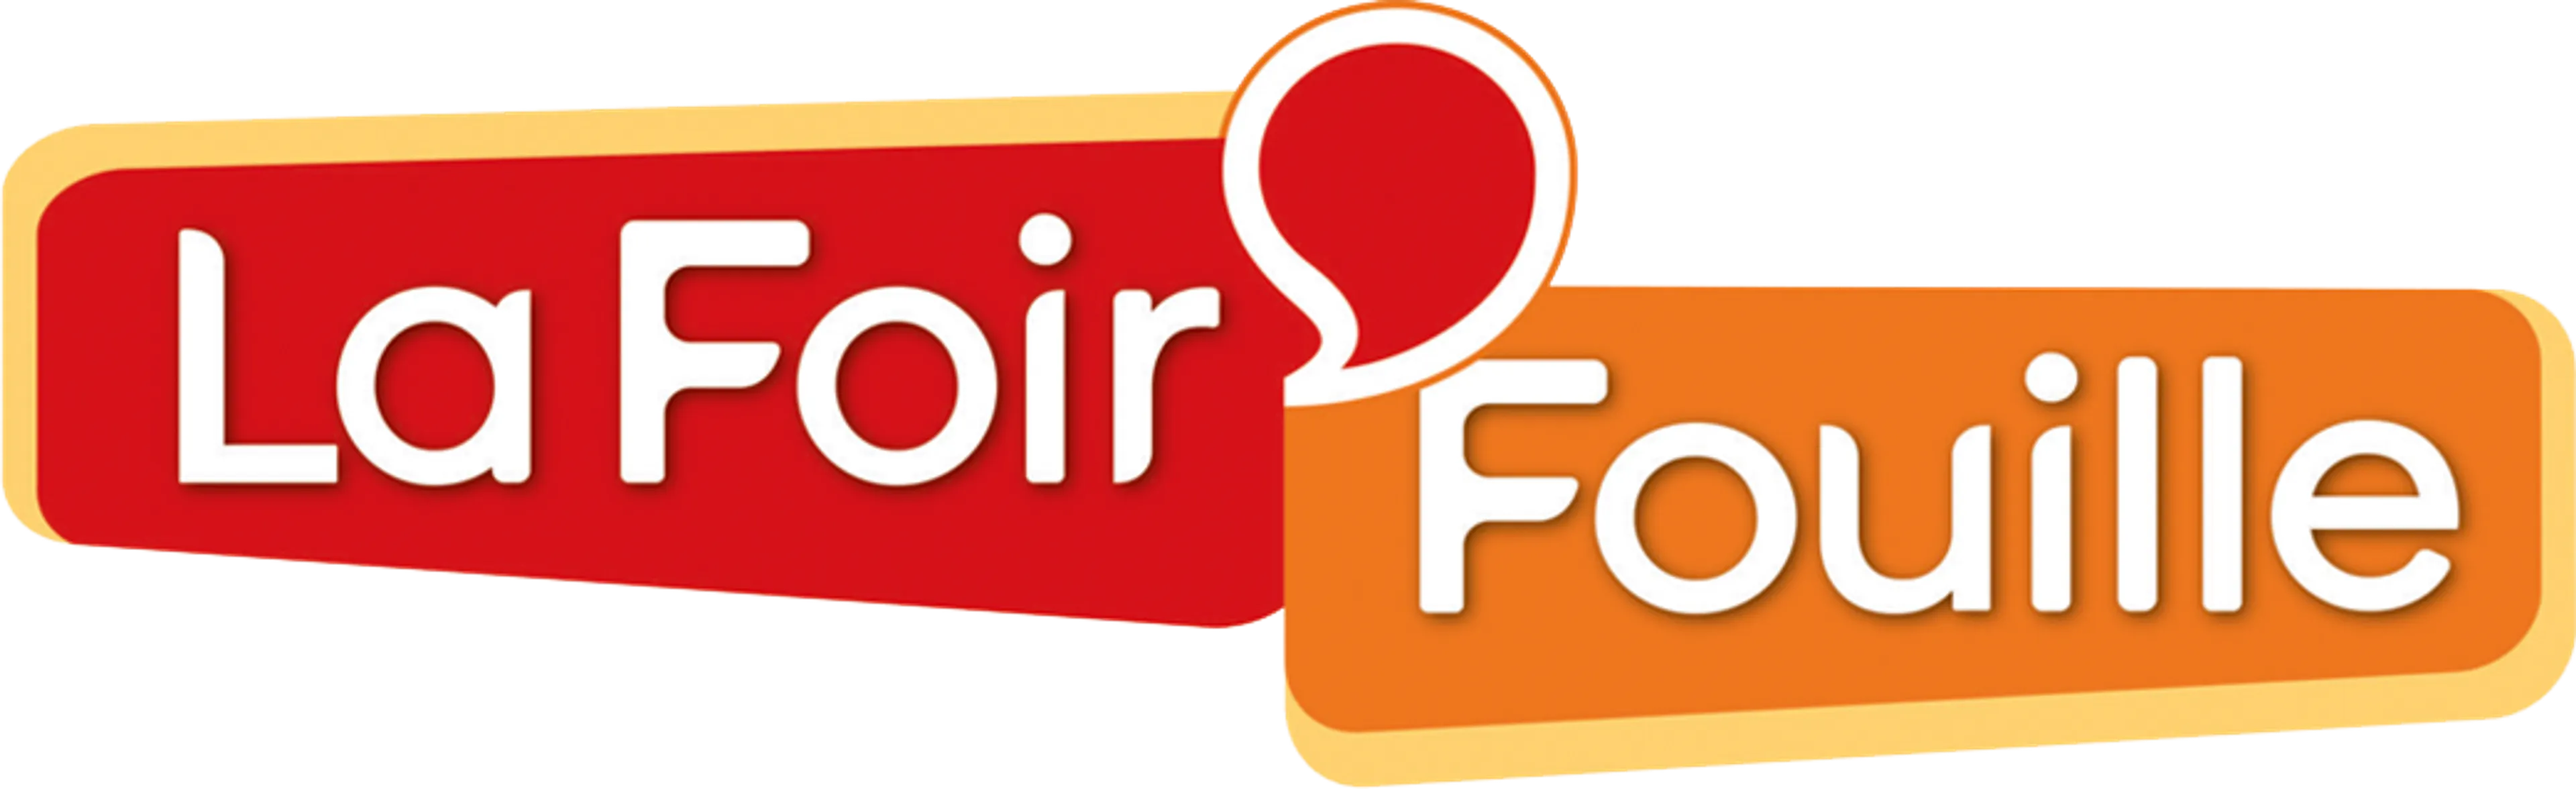 LA FOIR'FOUILLE logo